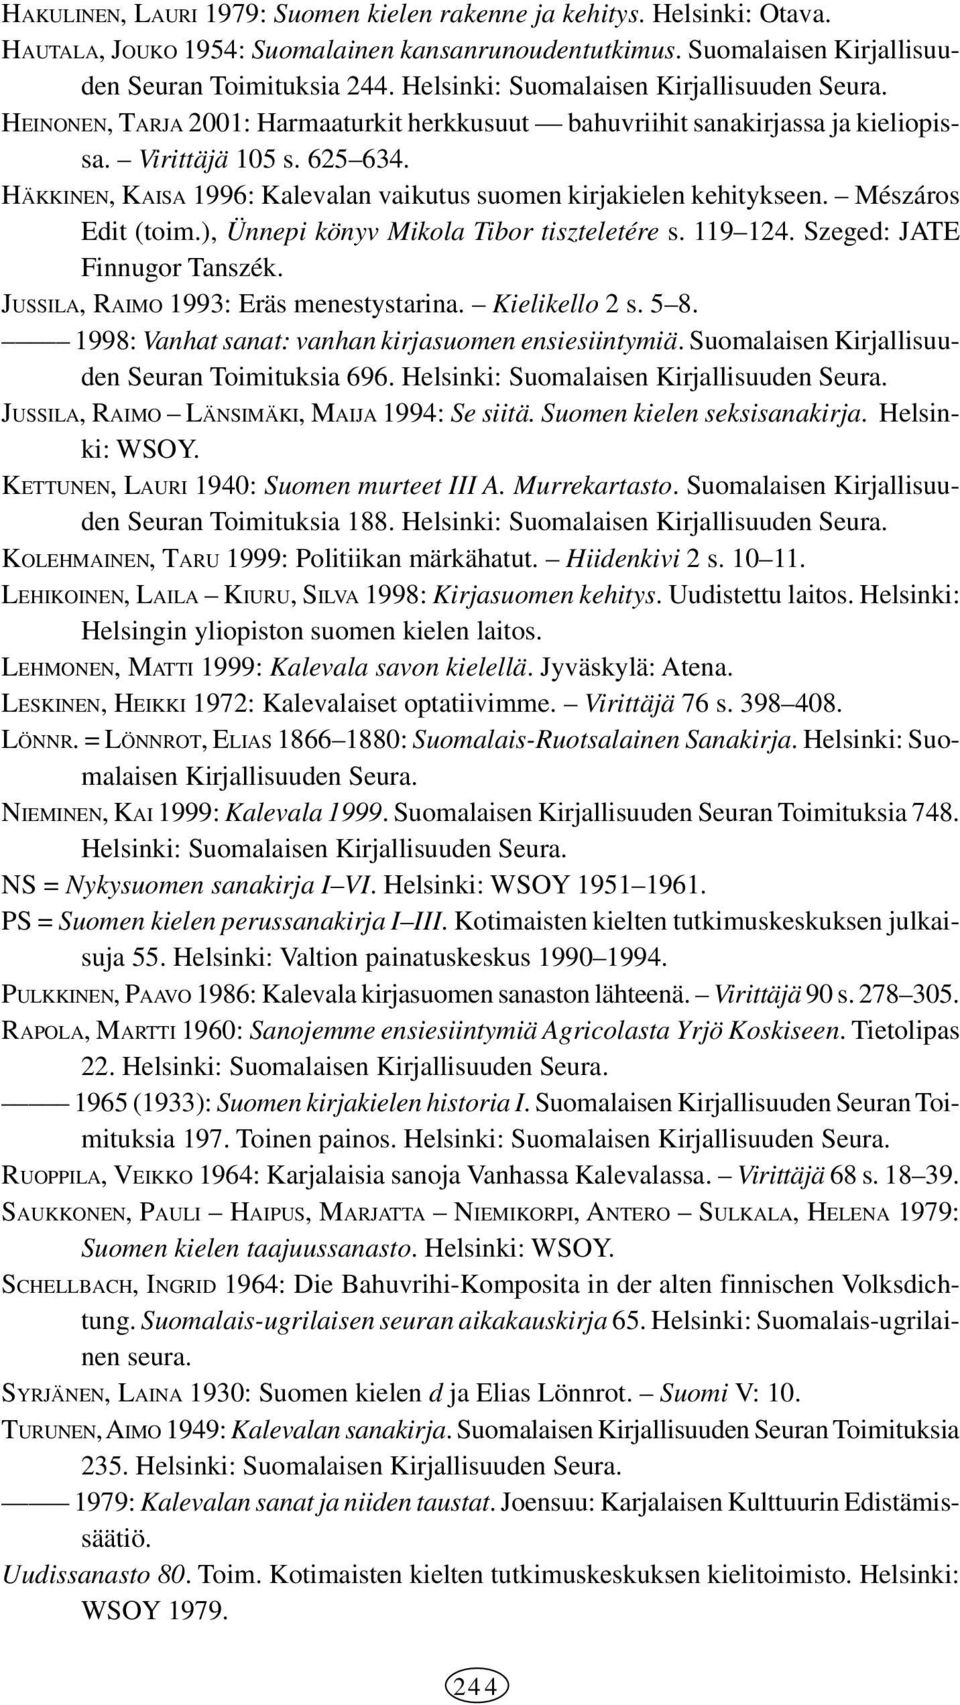 HÄKKINEN, KAISA 1996: Kalevalan vaikutus suomen kirjakielen kehitykseen. Mészáros Edit (toim.), Ünnepi könyv Mikola Tibor tiszteletére s. 119 124. Szeged: JATE Finnugor Tanszék.